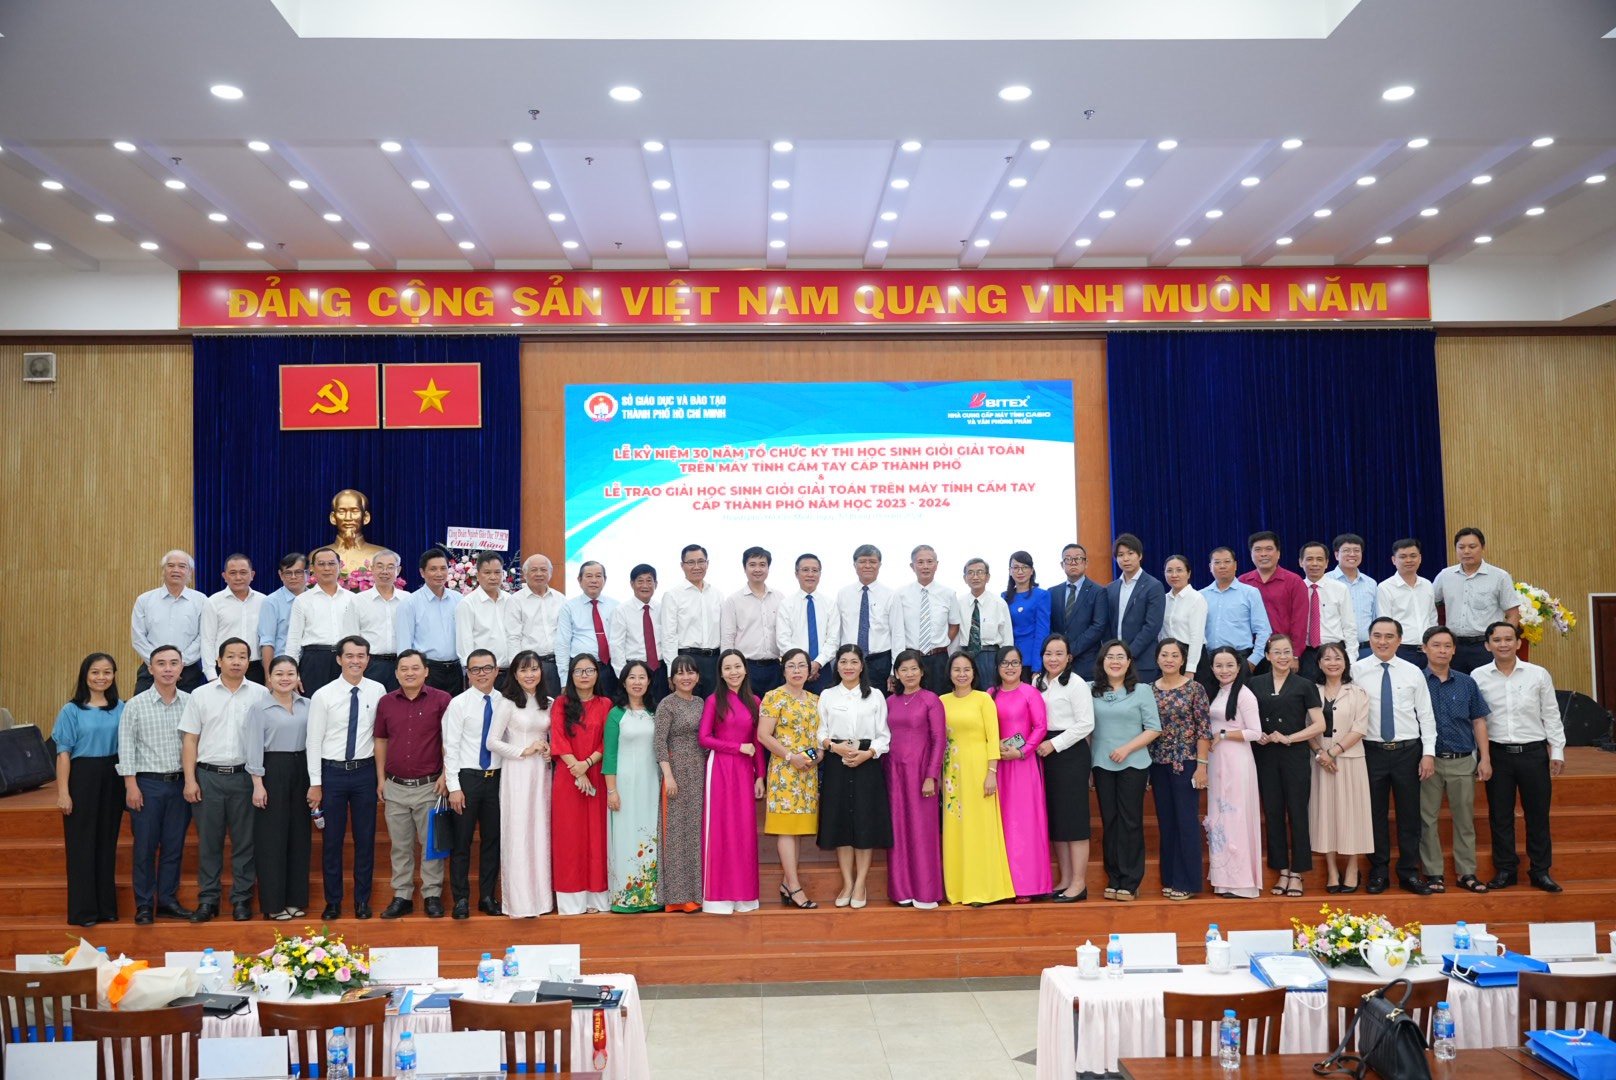 Sự kiện diễn ra sáng nay tại Trường THPT chuyên Lê Hồng Phong, TP.HCM